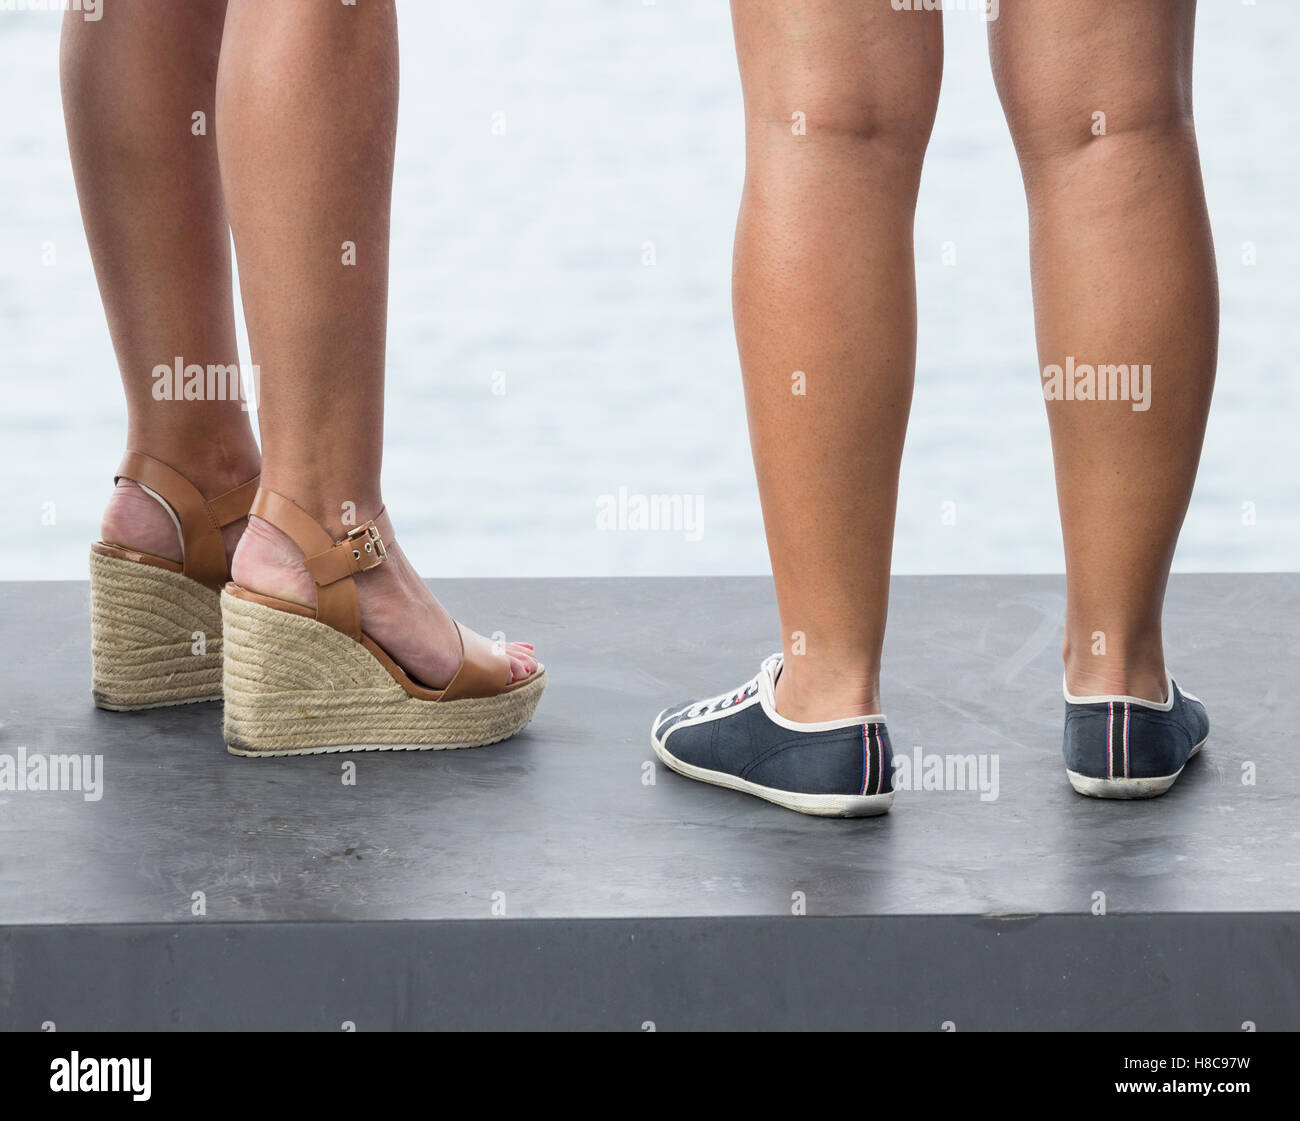 Basso angolo vista di due donna che indossa diversi tipi di calzature: talloni e piatta. Foto Stock